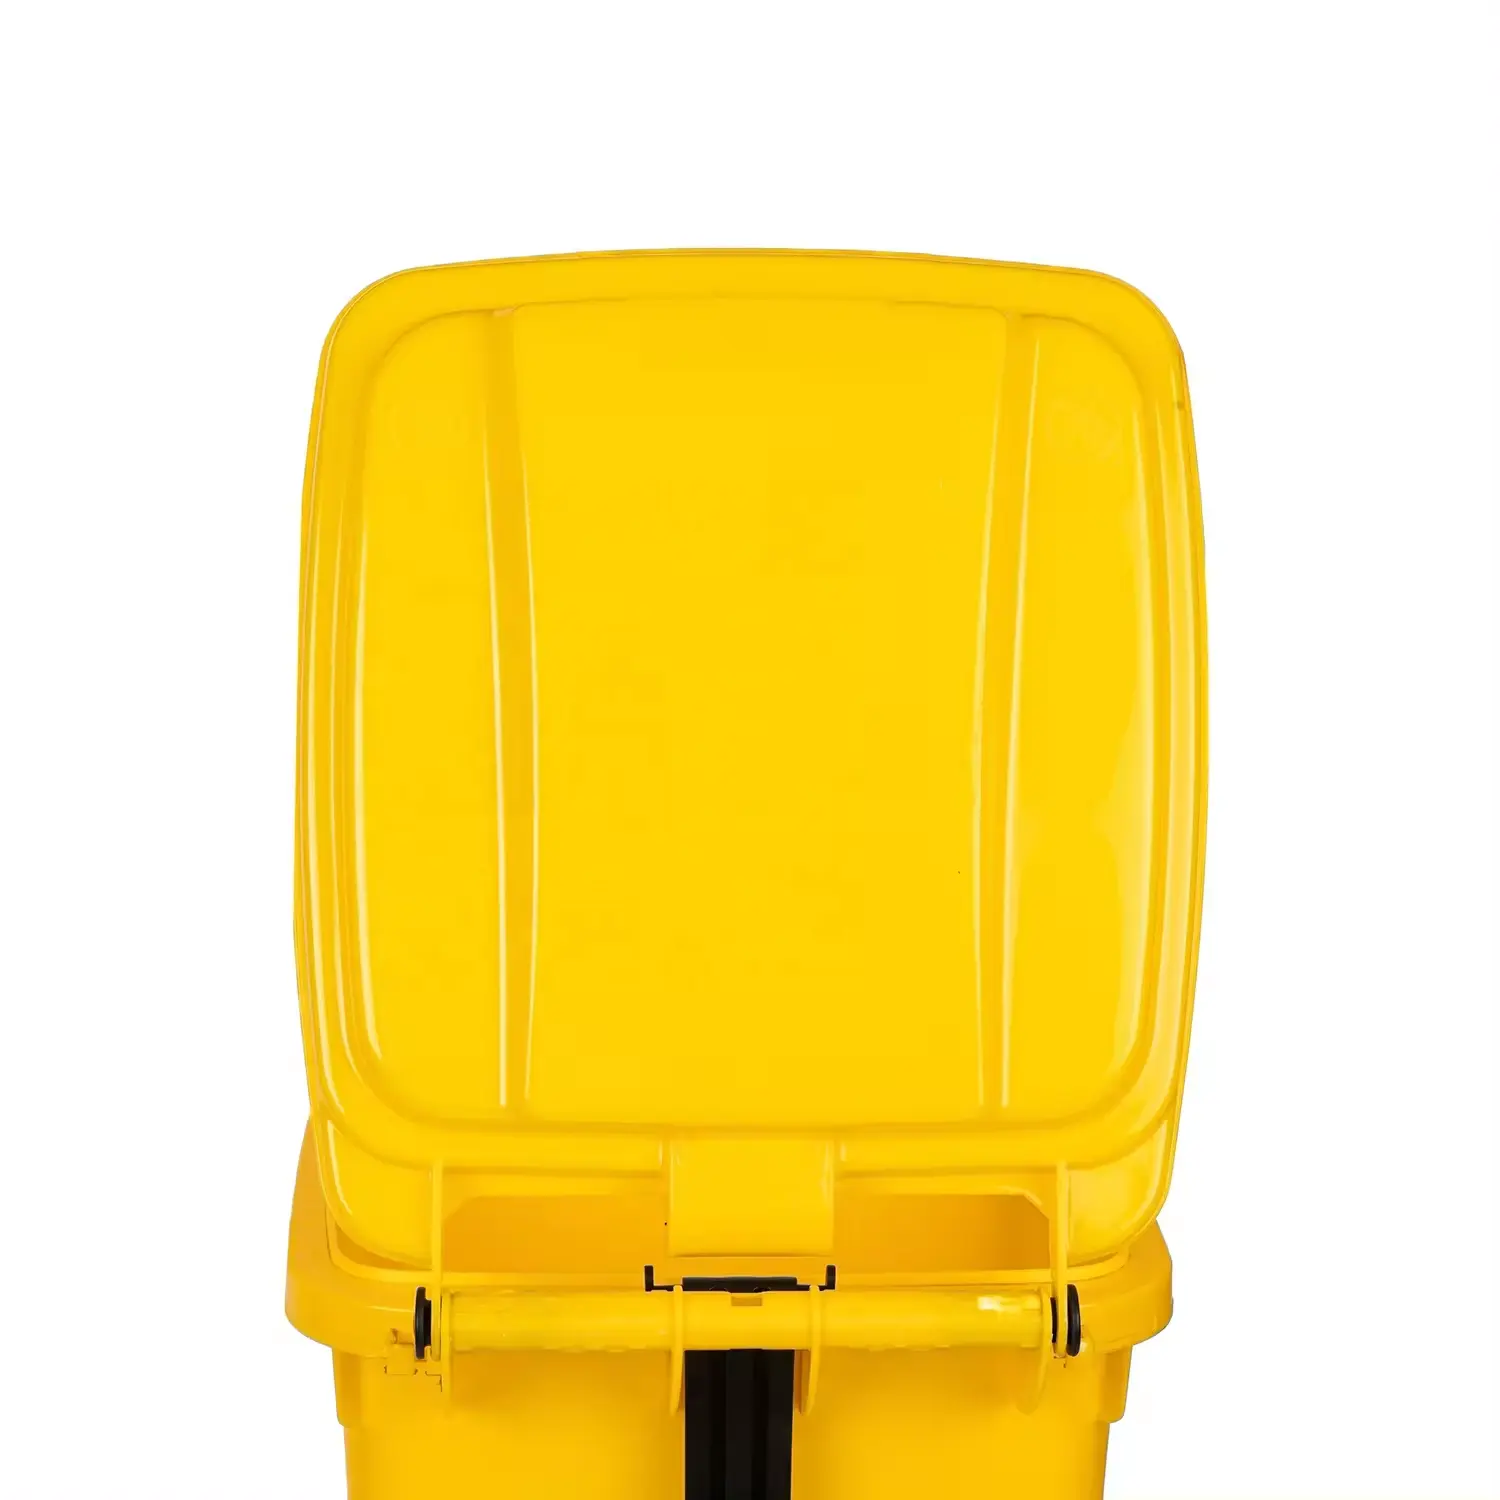 Recipiente de basura de plástico de 100l, cubo de basura rectangular con pedal de paso de plástico, tapa de fácil cierre extraíble